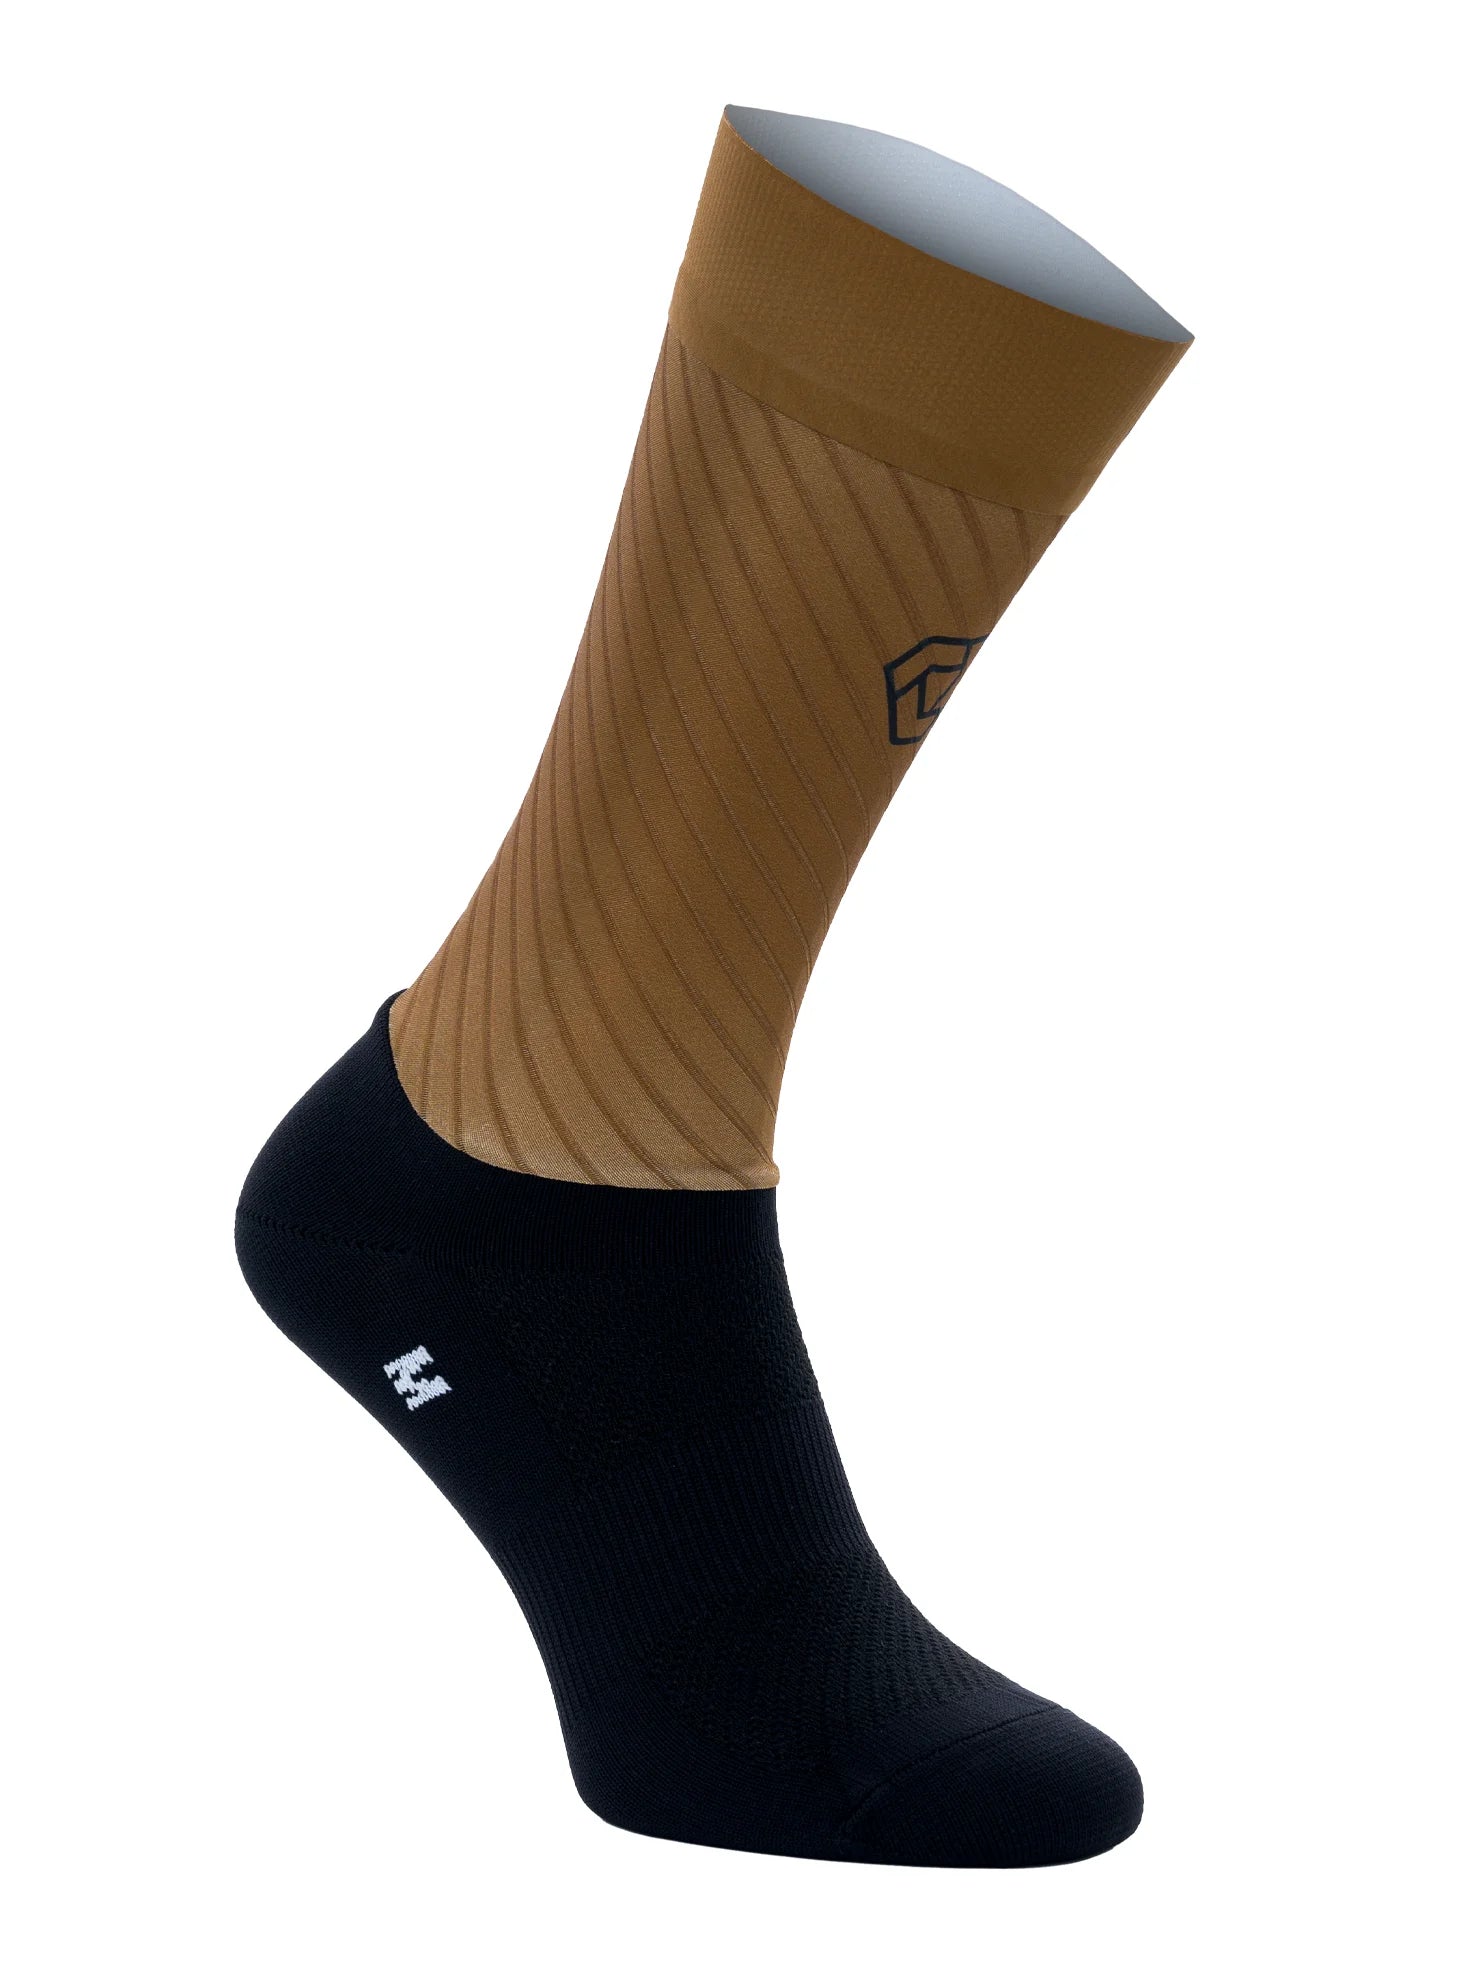 Aero-sokken 3.0